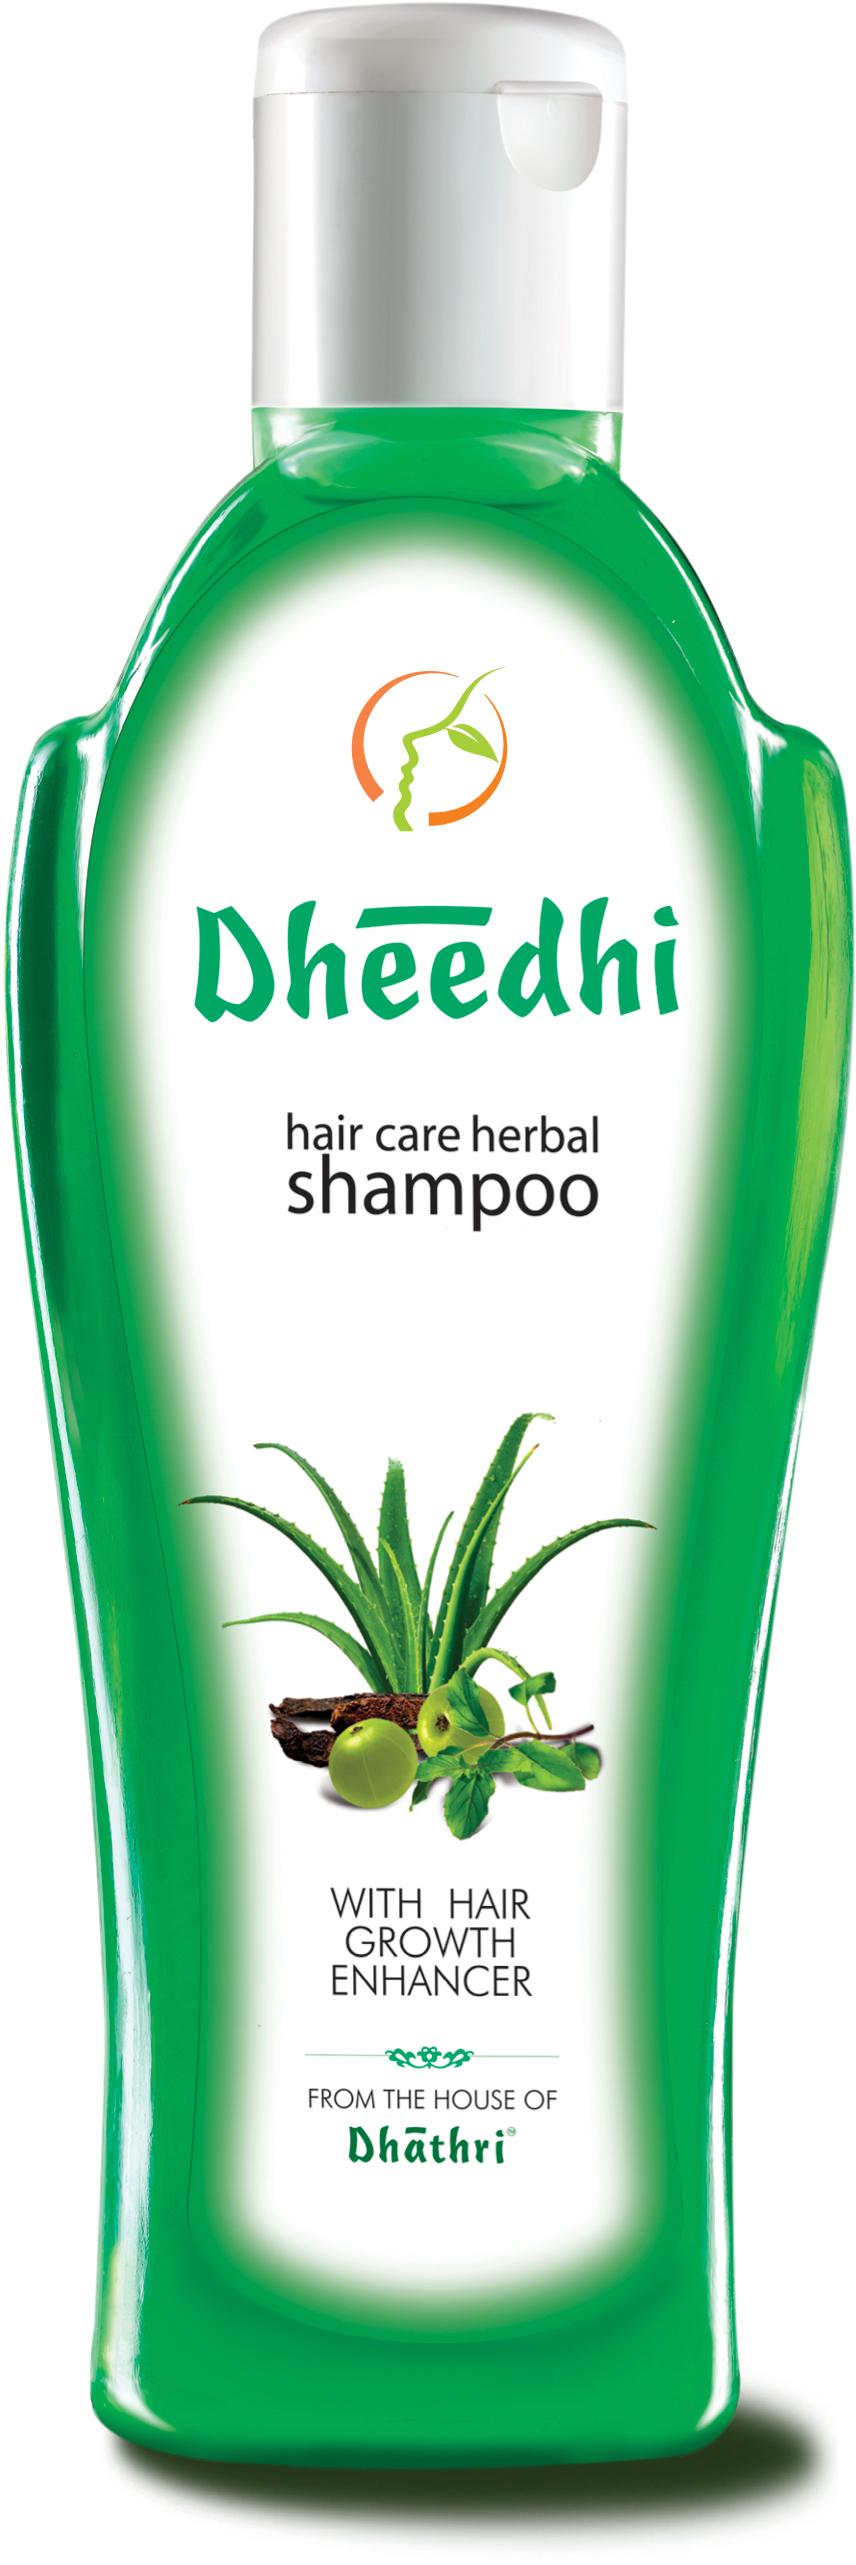 Dheedhi Shampoo